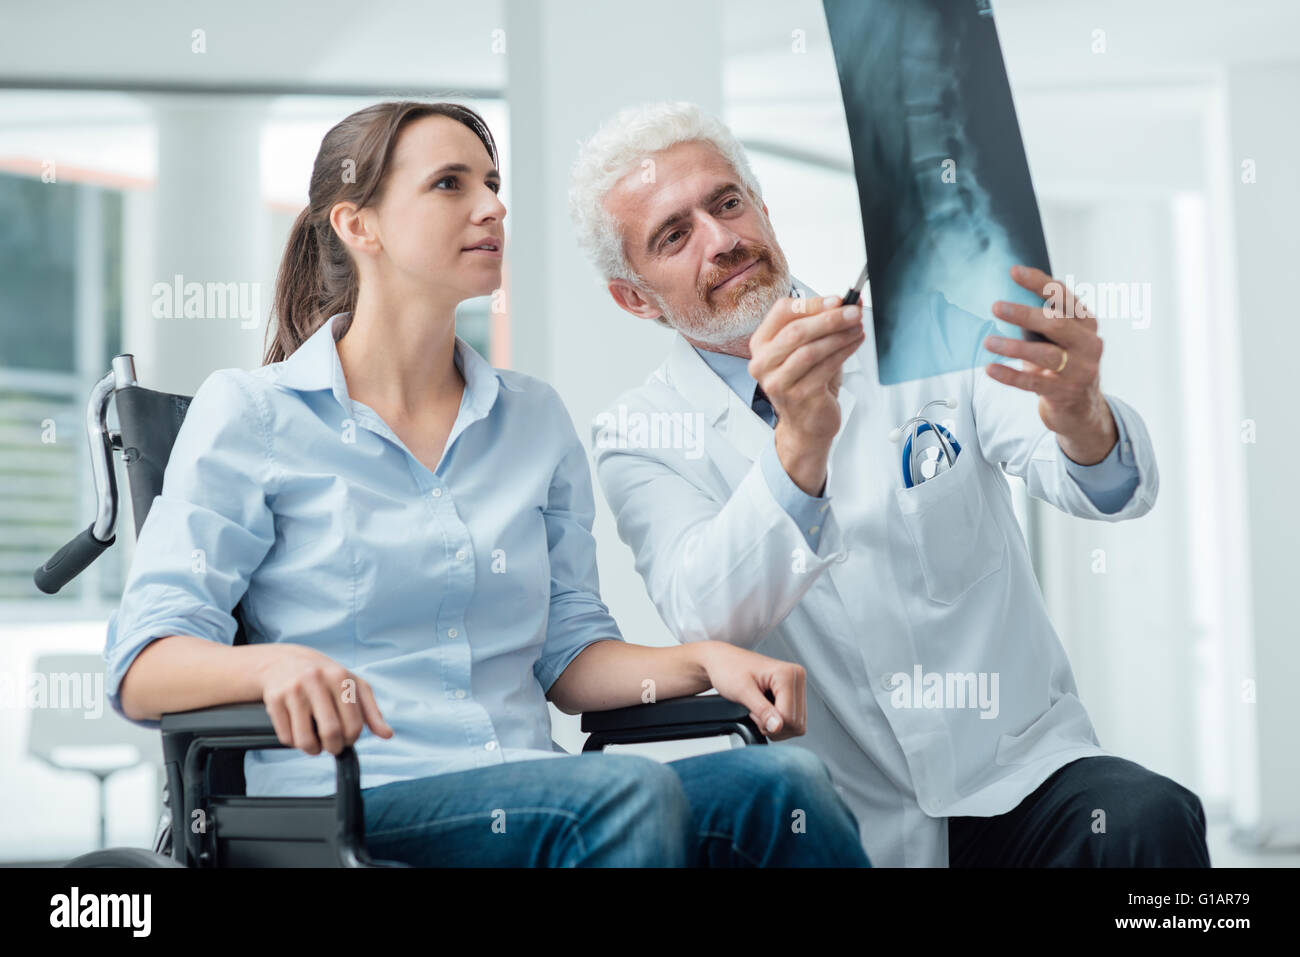 Le radiologue examinant une femme en fauteuil roulant's x-ray de colonne vertébrale humaine lors d'une visite à l'hôpital Banque D'Images